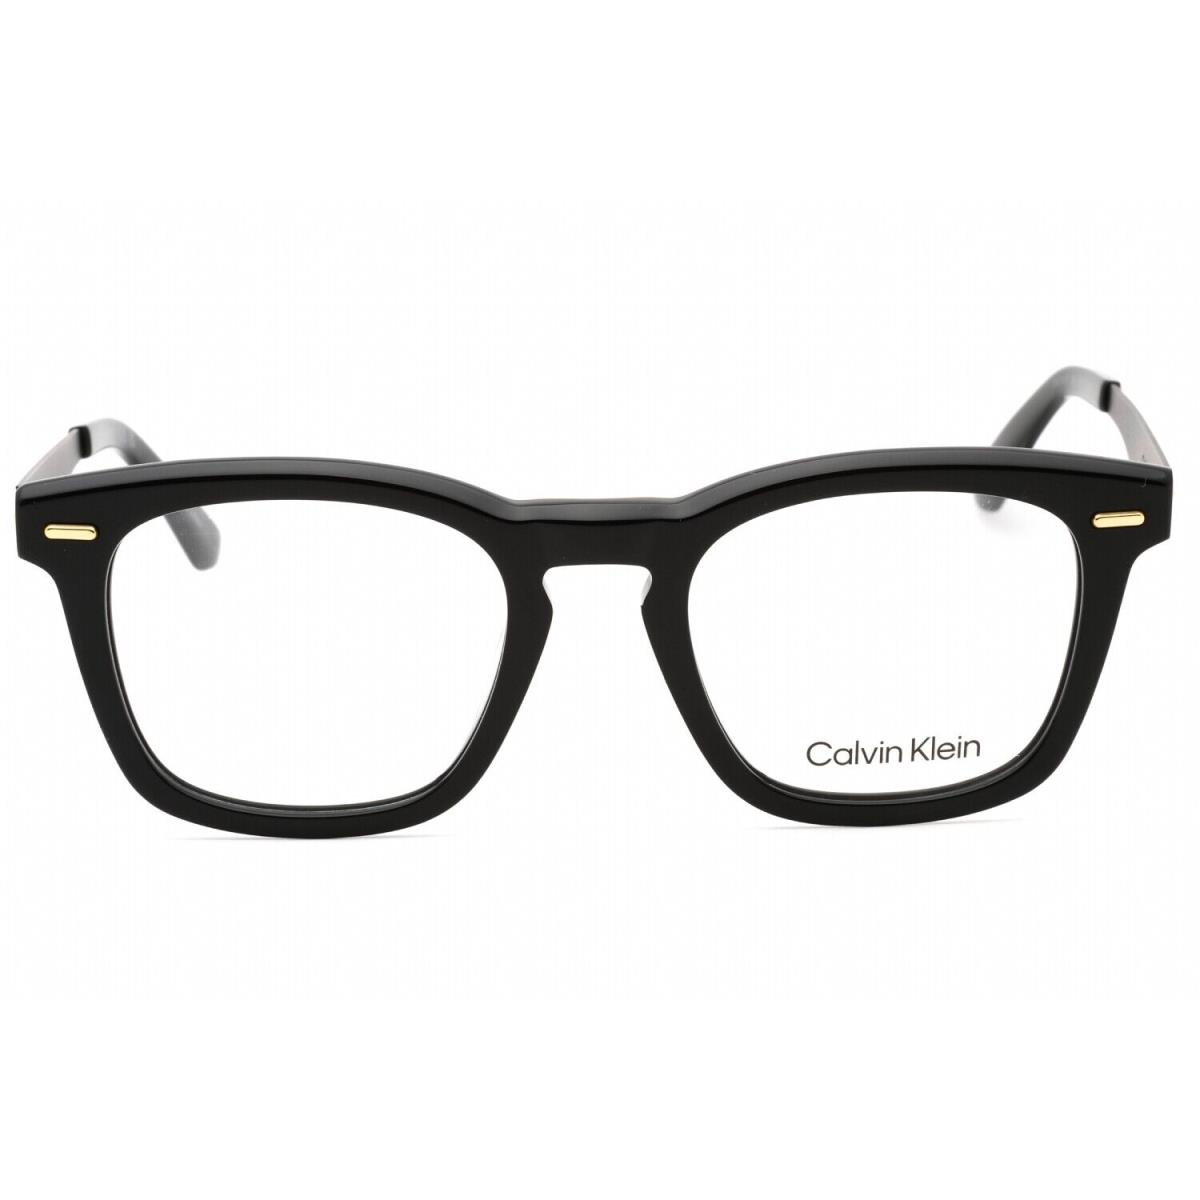 Calvin Klein CK21517 001 Eyeglasses Black Frame 51mm